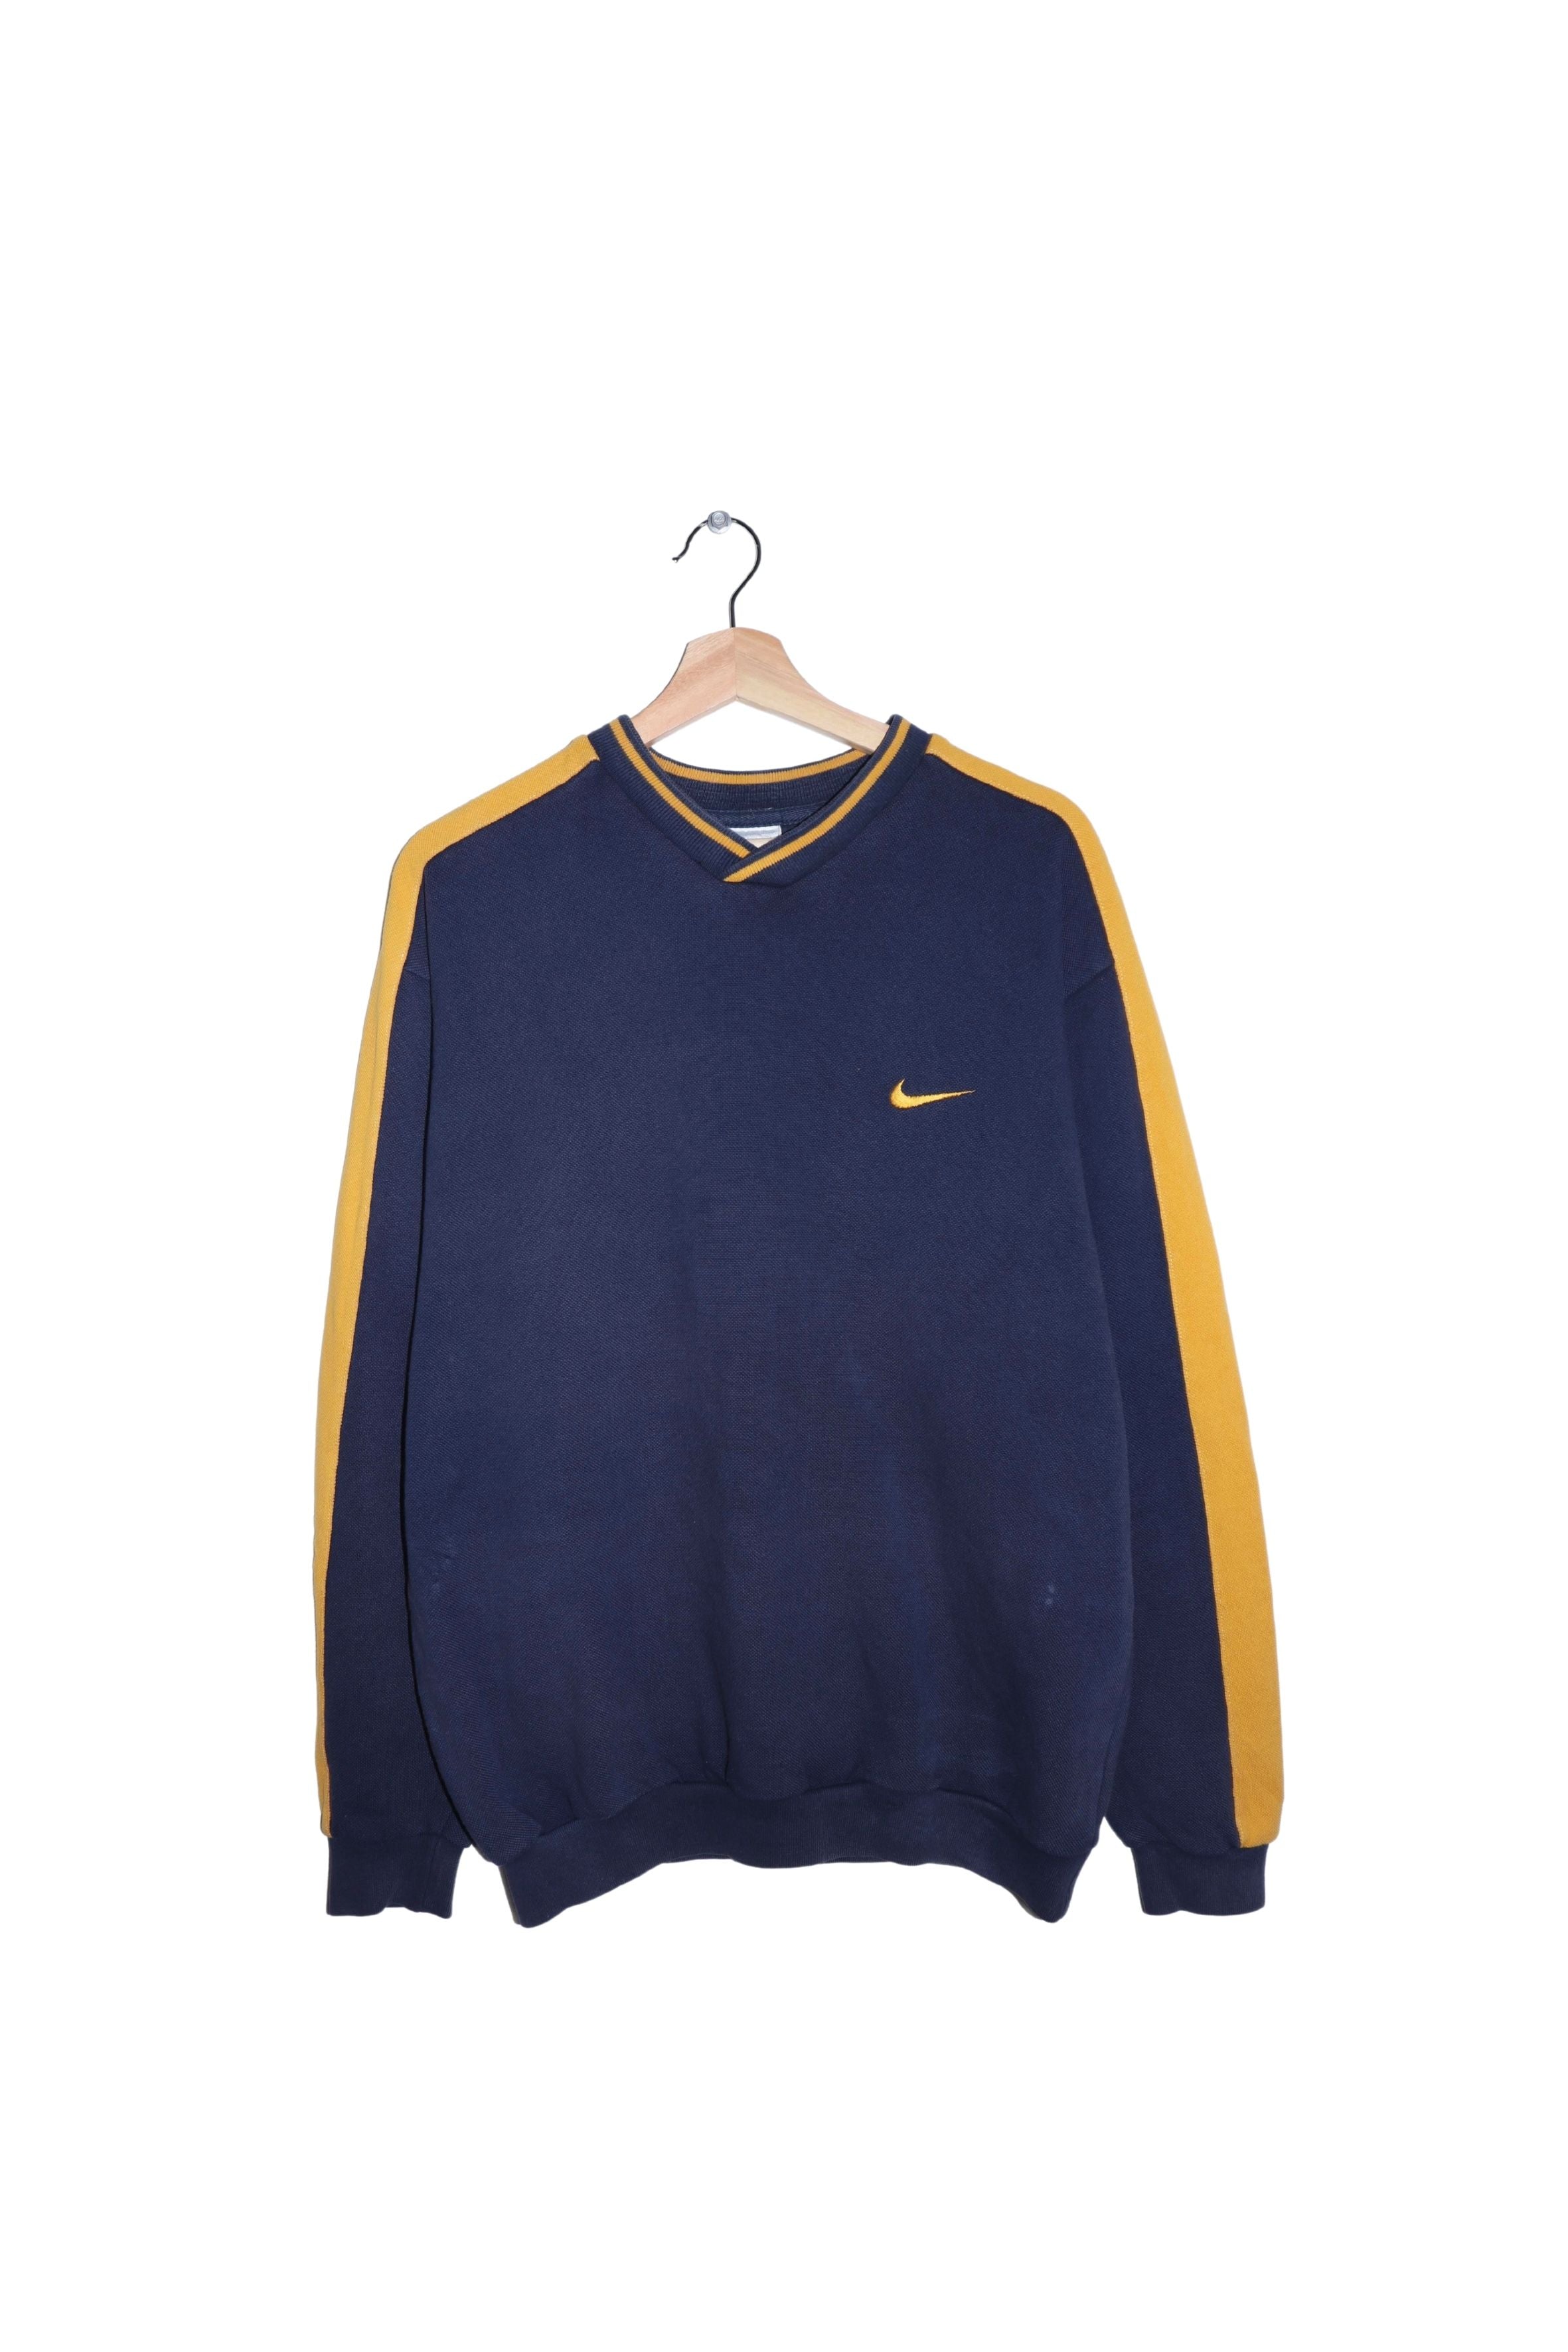 Nike 90s Navy with Yellow Sweatshirt Vintage